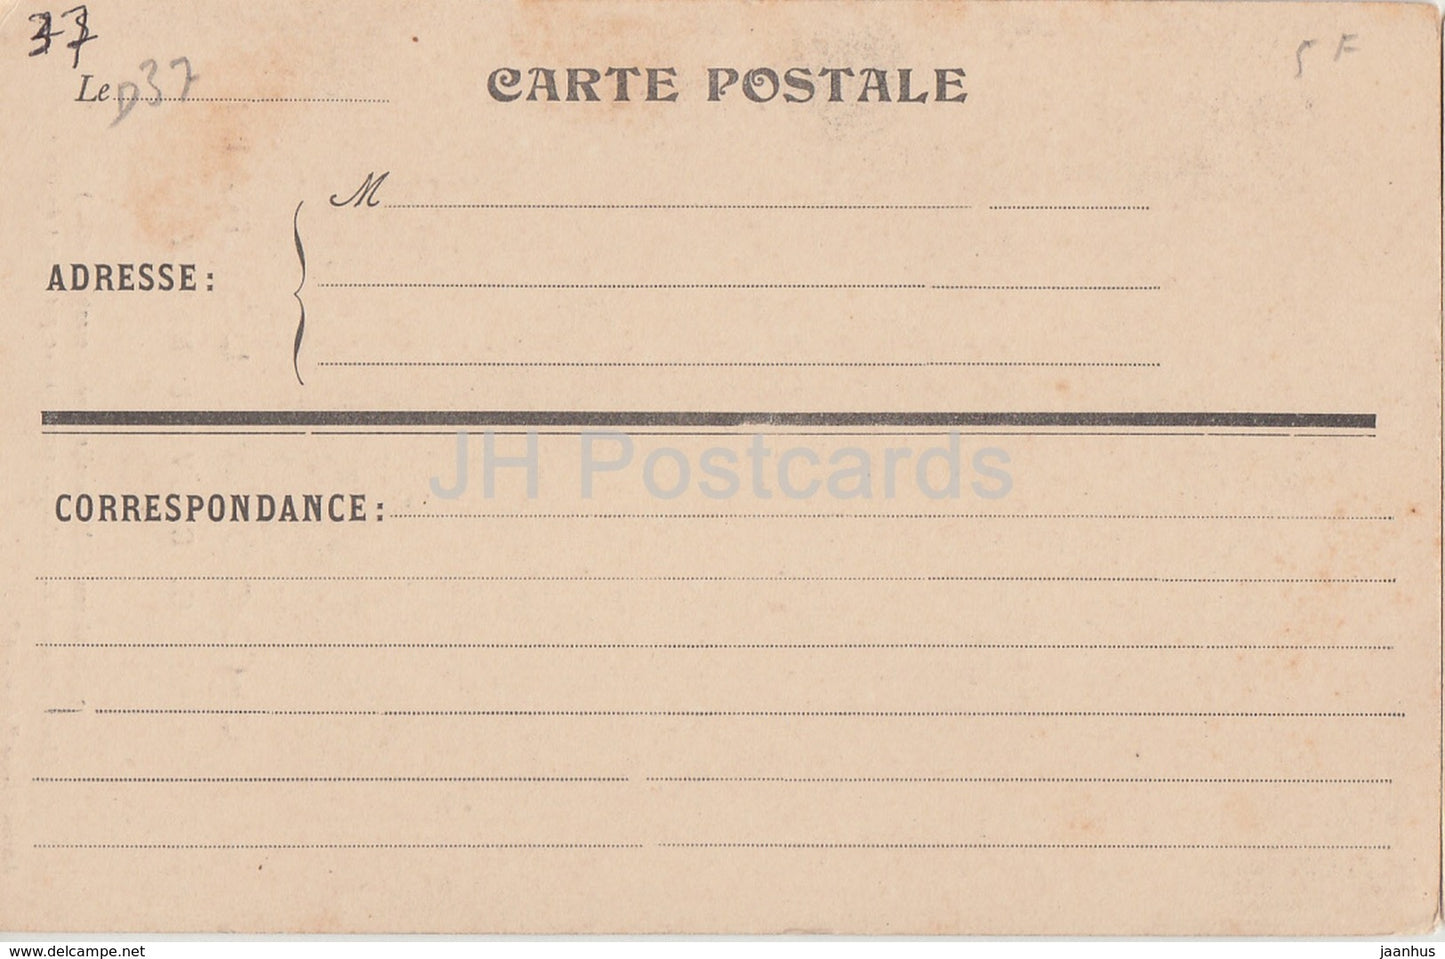 Château de Mollaville - près Noizay - Cheminée de la Bibliothèque - Chocolat Lorrain - carte postale ancienne - France - inutilisée